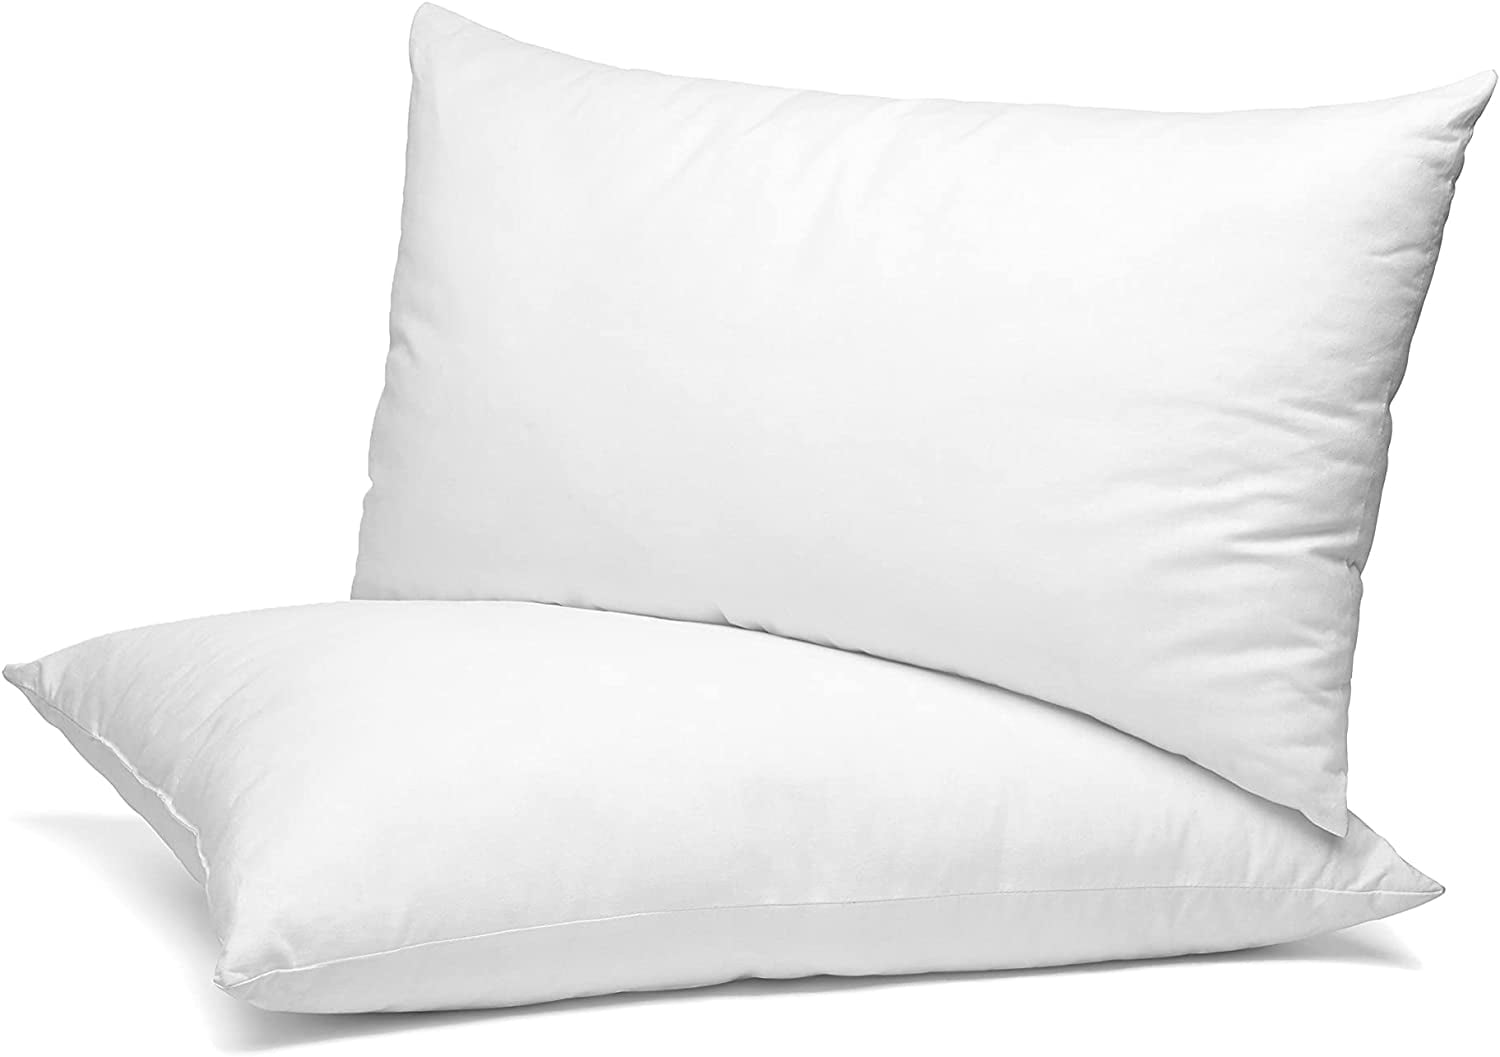 Utopia Bedding Throw Pillows Insert 2PK 22x22 and 2PK 12x20 Inches (White)